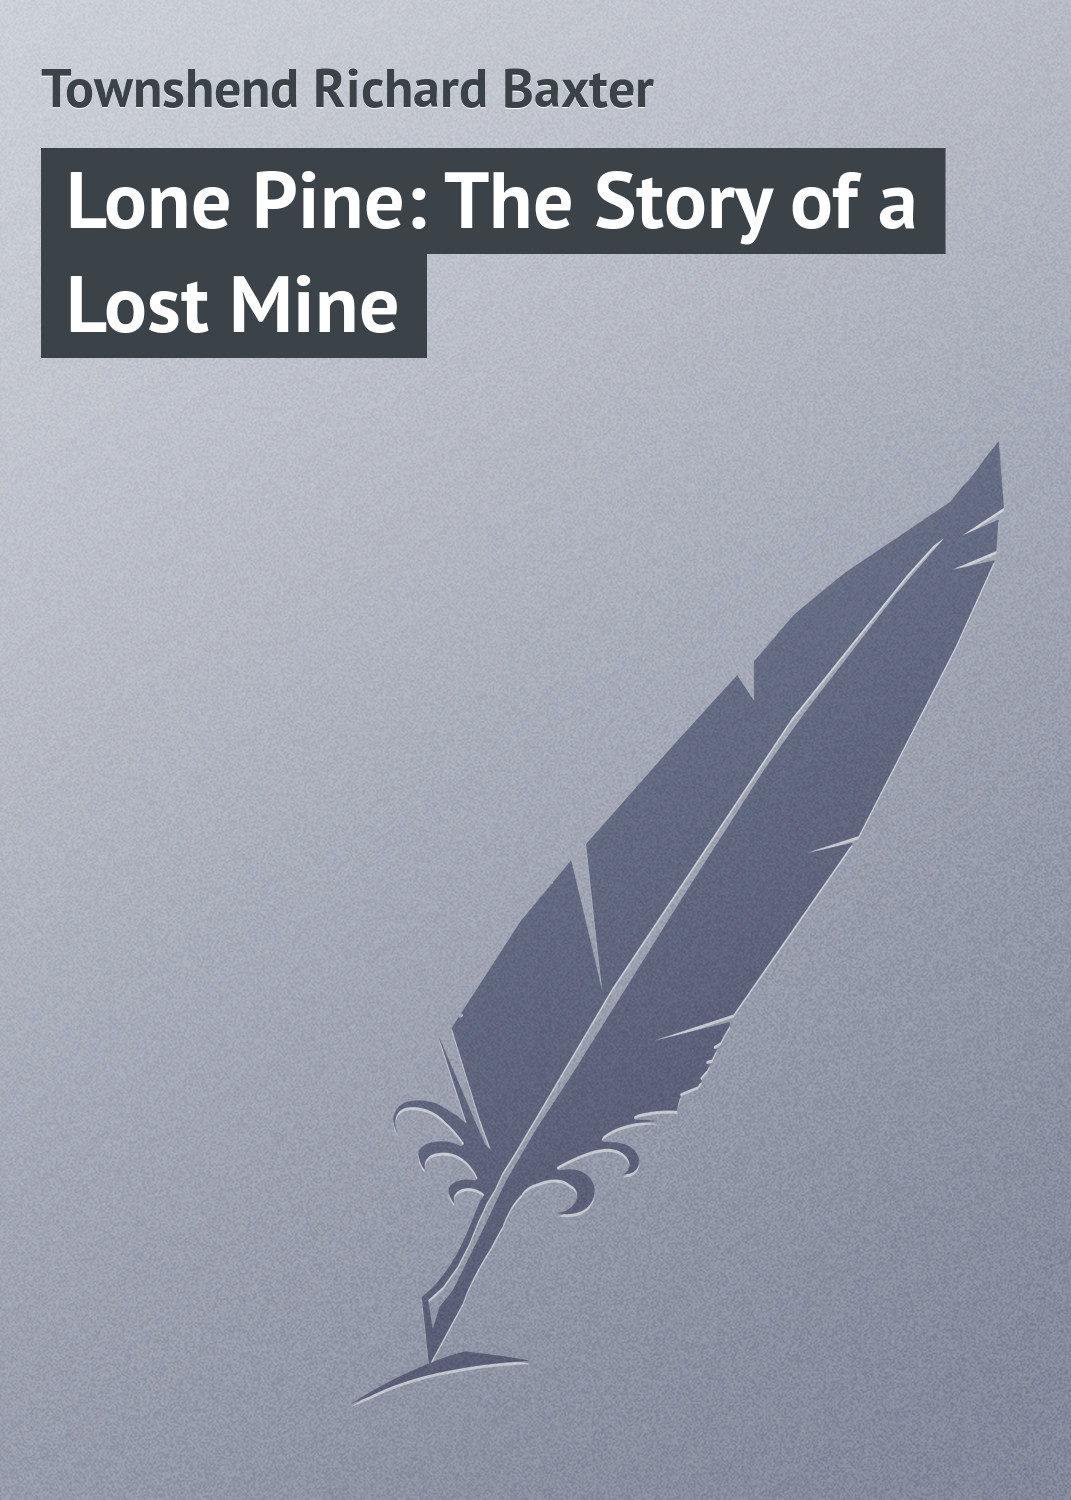 Книга Lone Pine: The Story of a Lost Mine из серии , созданная Richard Townshend, может относится к жанру Зарубежная классика, Зарубежные приключения. Стоимость электронной книги Lone Pine: The Story of a Lost Mine с идентификатором 23147027 составляет 5.99 руб.